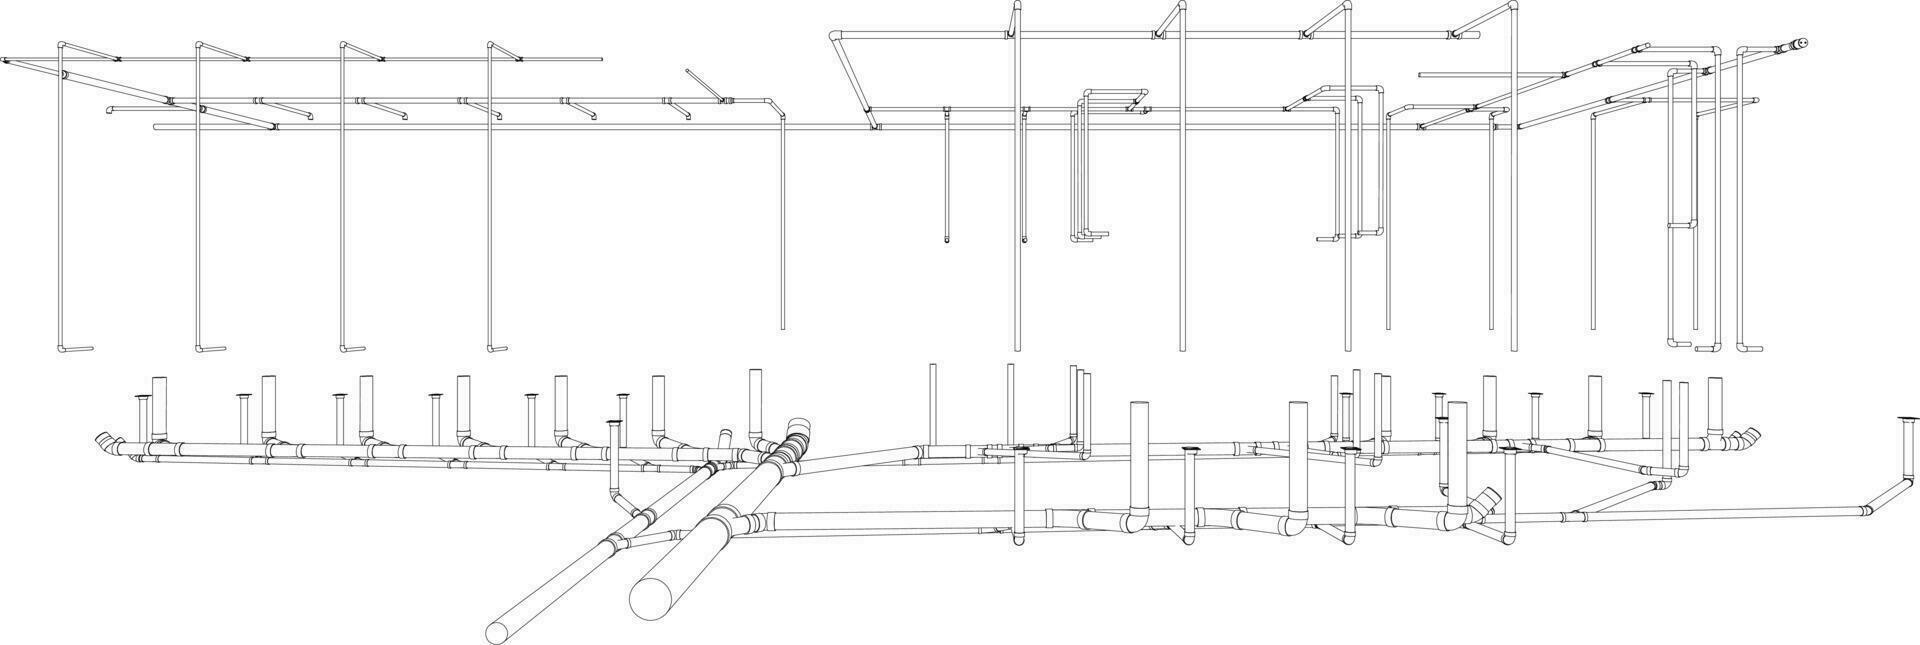 3d ilustração do construção tubulação vetor